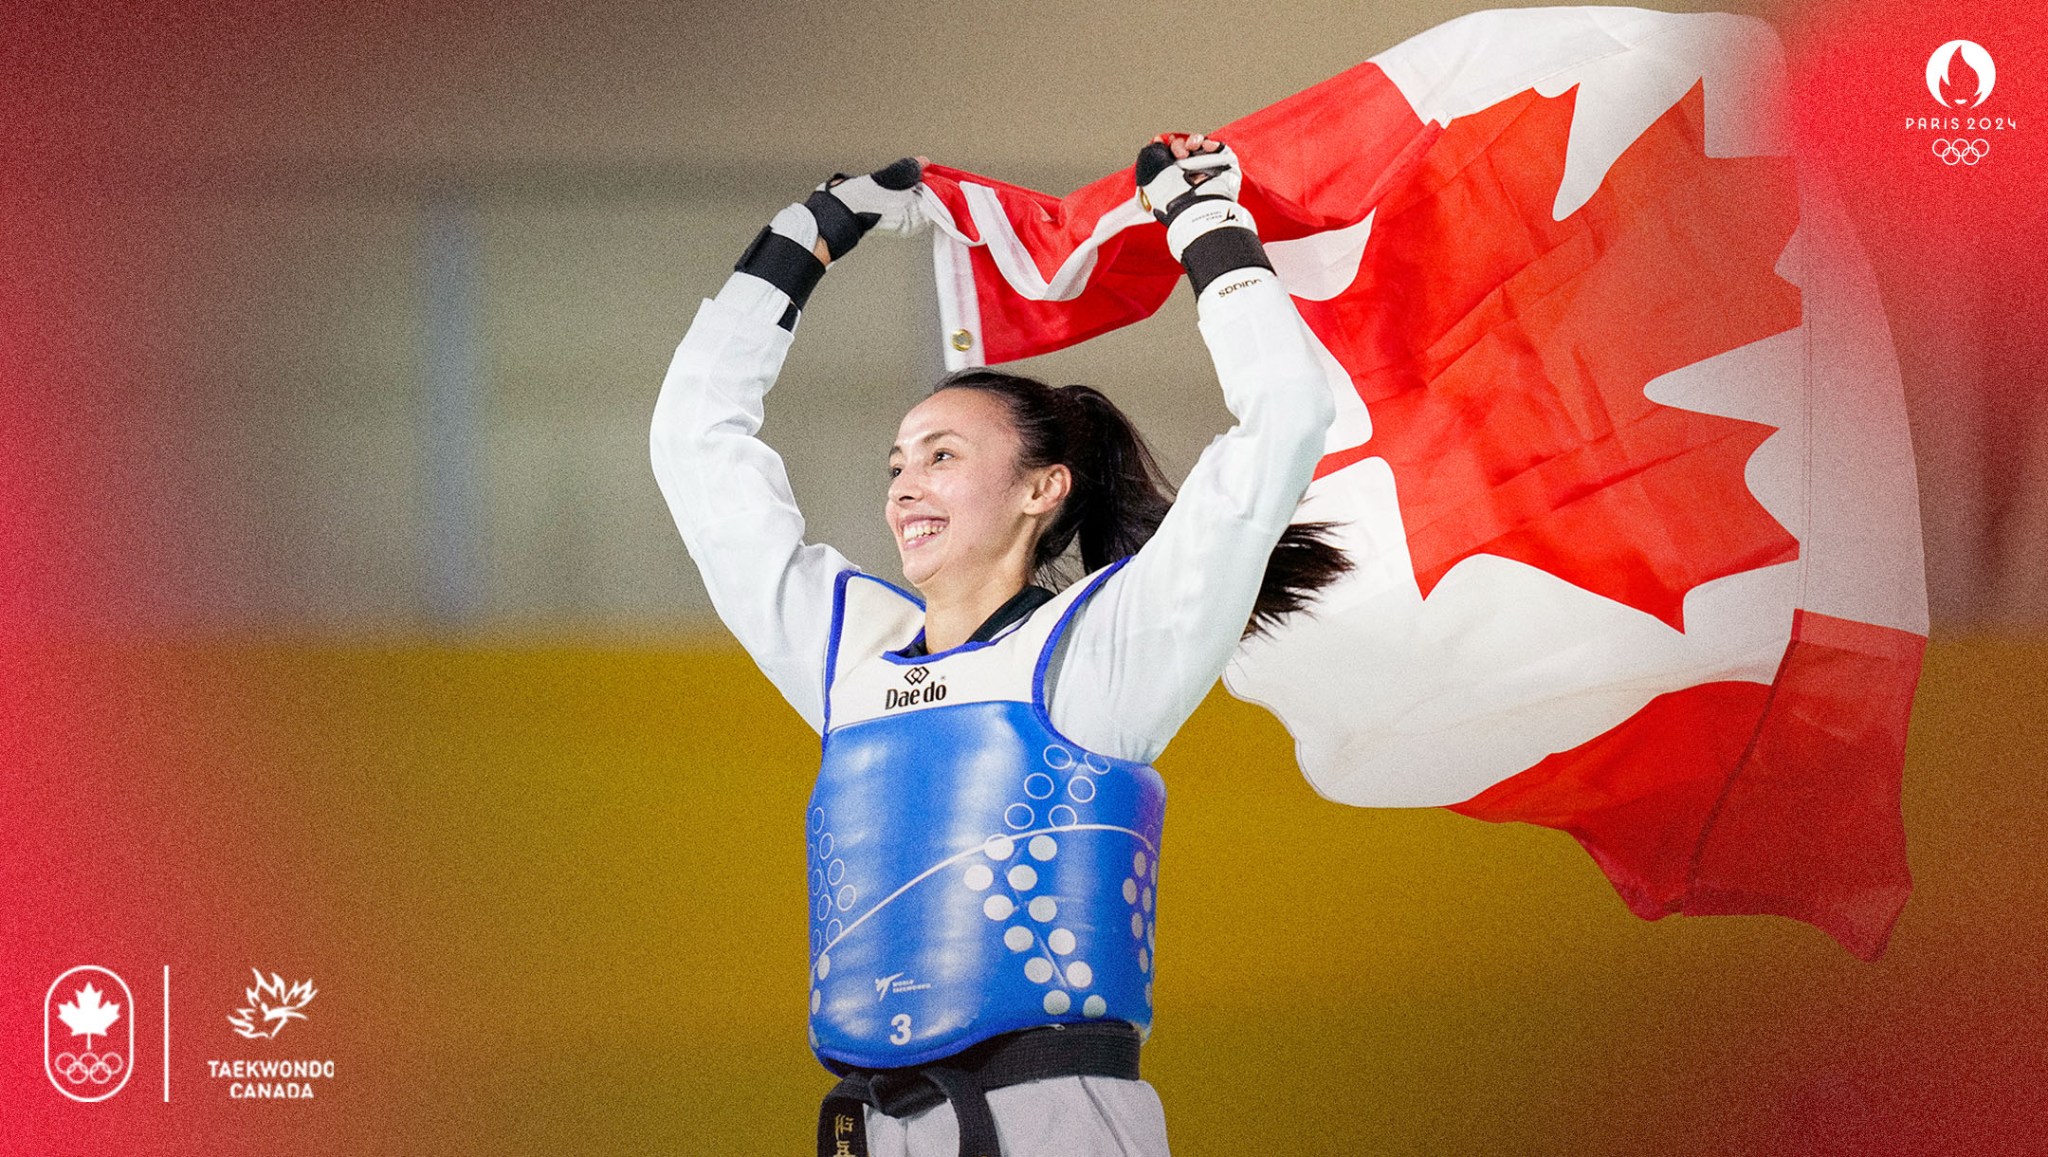 Le taekwondo est la première équipe nommée au sein de l’Équipe
olympique canadienne pour Paris 2024